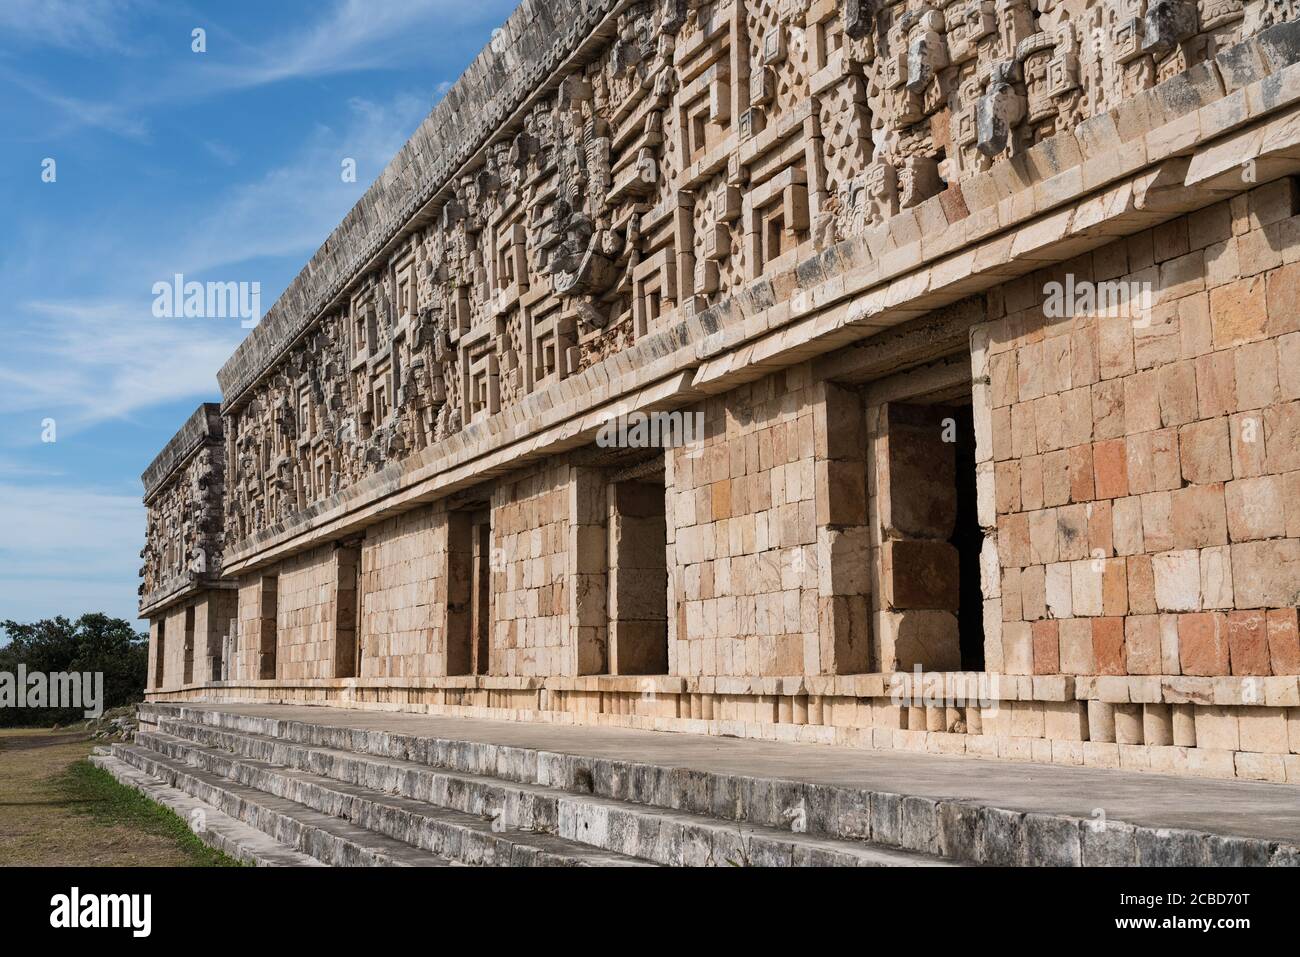 Le Palais des gouverneurs dans les ruines de la ville maya d'Uxmal à Yucatan, Mexique. Ville préhispanique d'Uxmal - un centre du patrimoine mondial de l'UNESCO. Banque D'Images